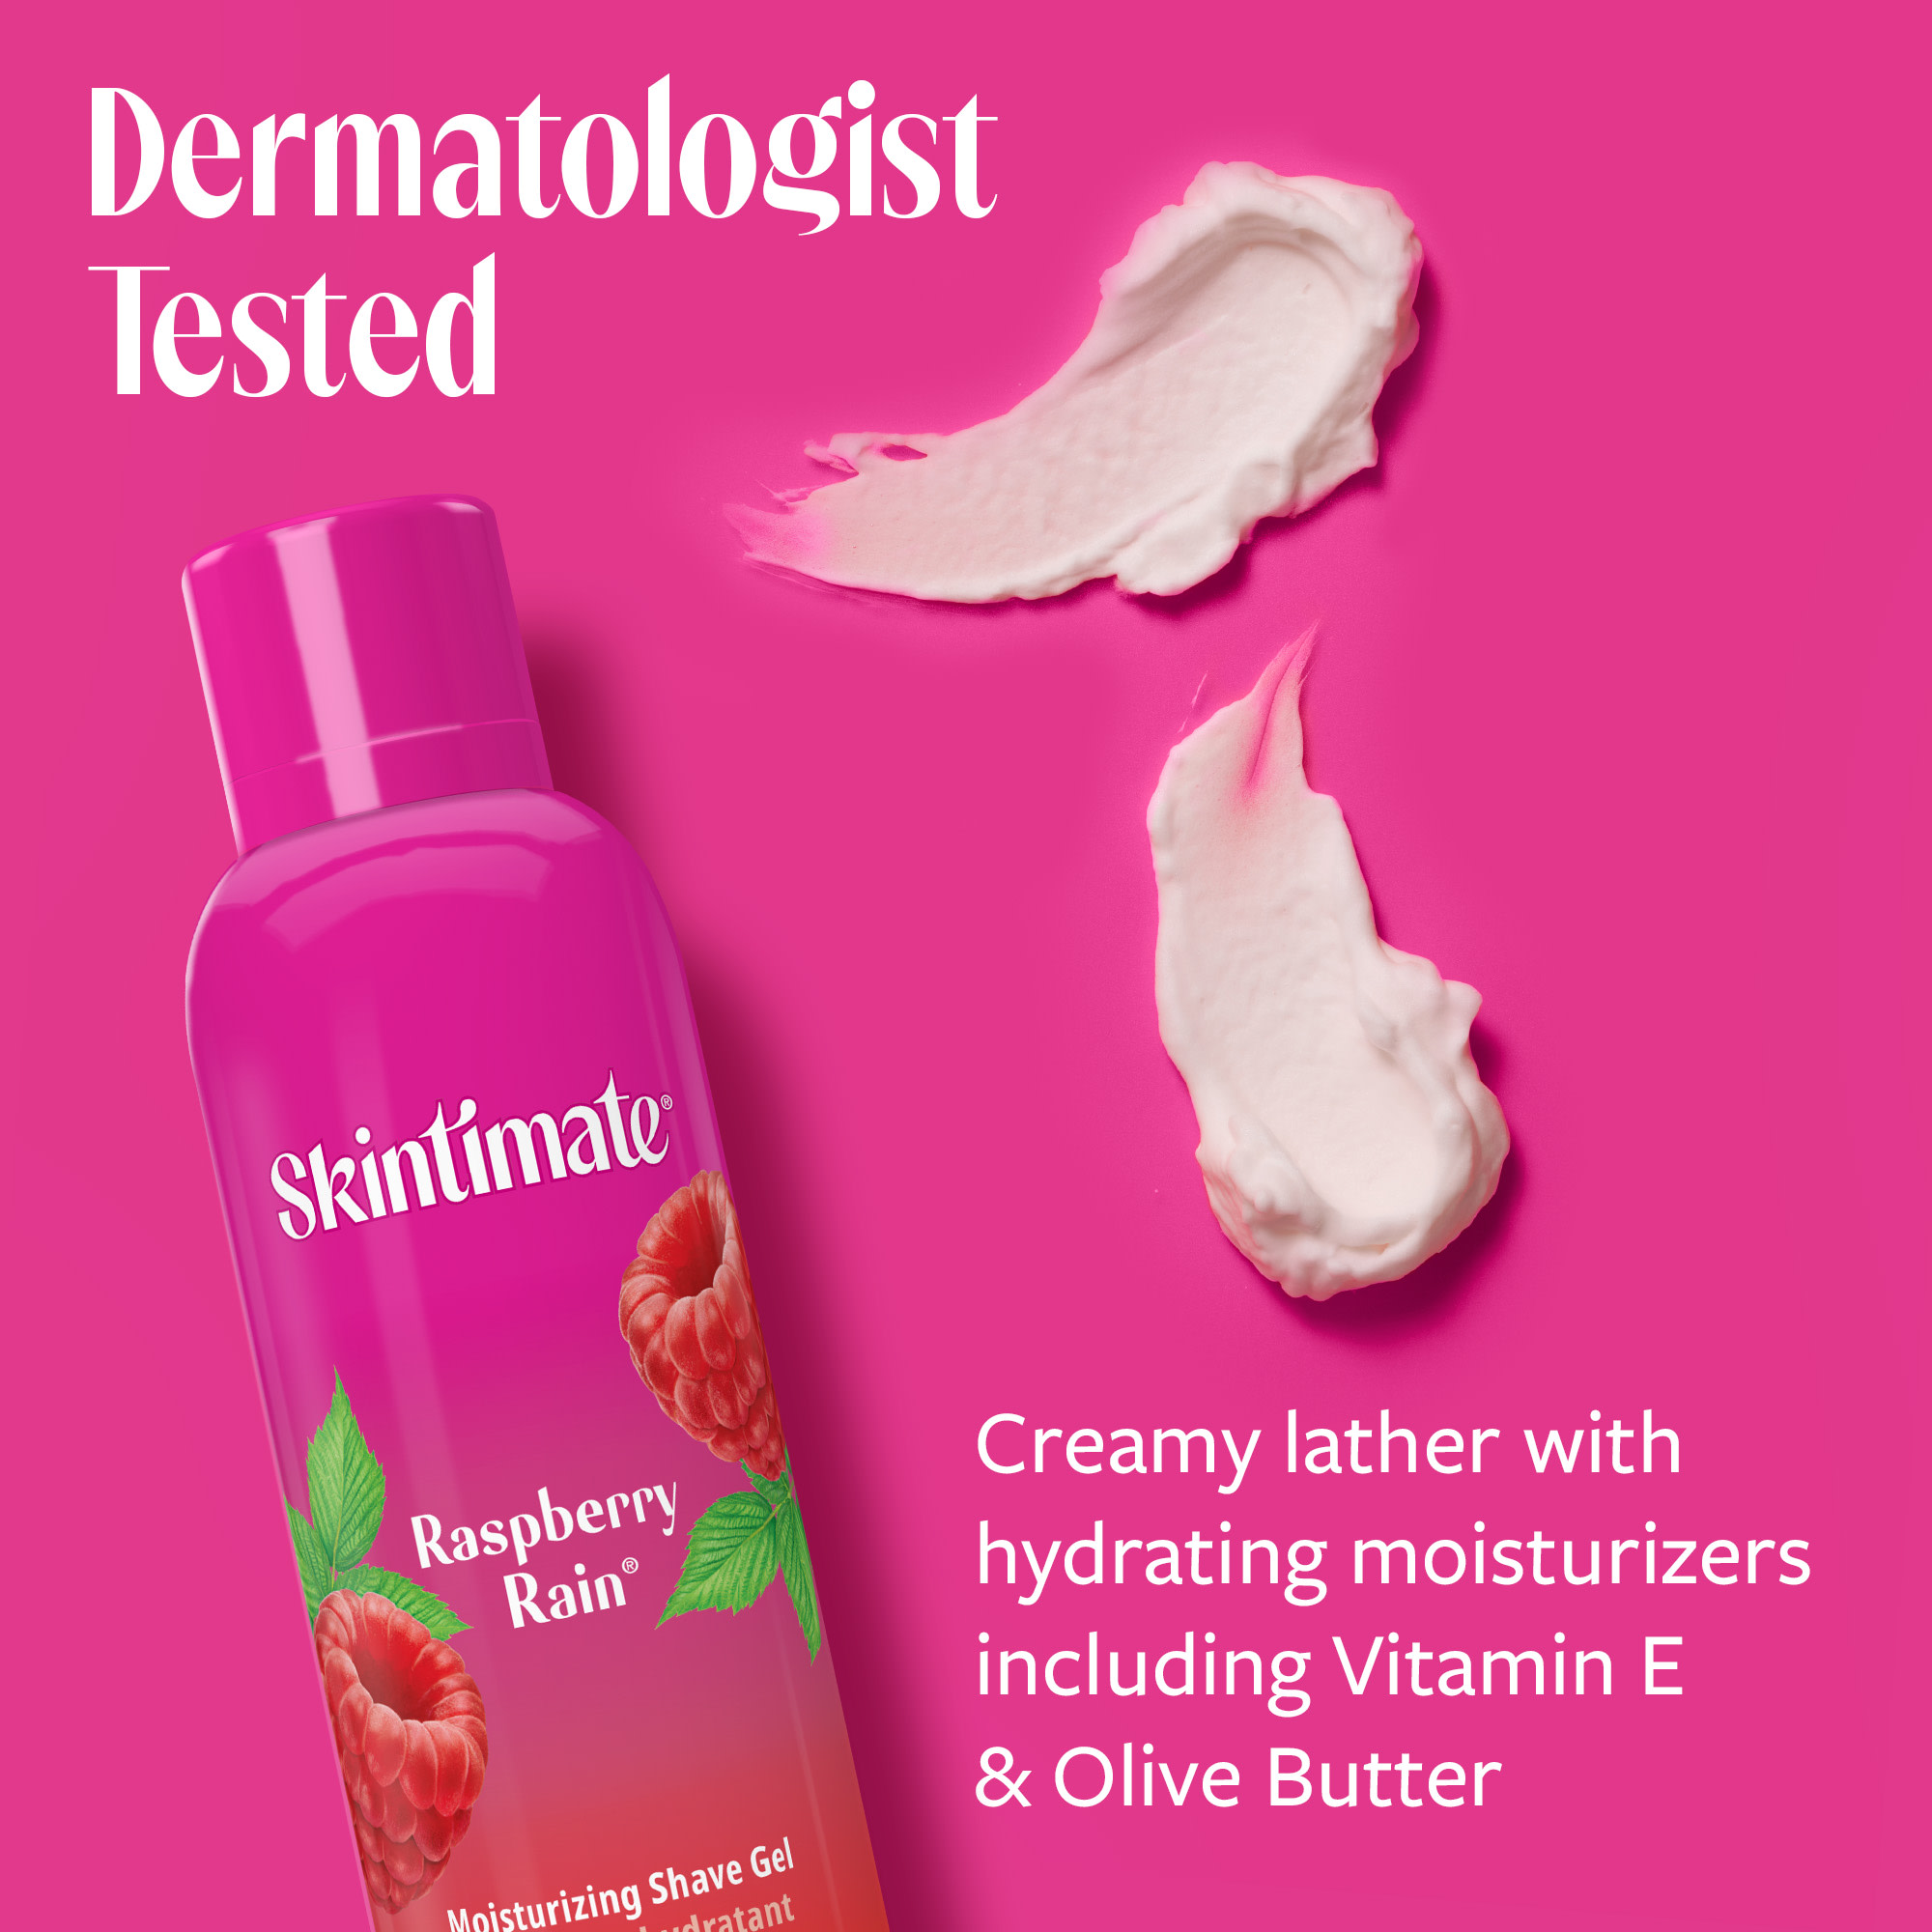 Skintimate Raspberry Rain Shave Gel for Women, Moisturizing Shaving Cream, 7 oz - image 4 of 10